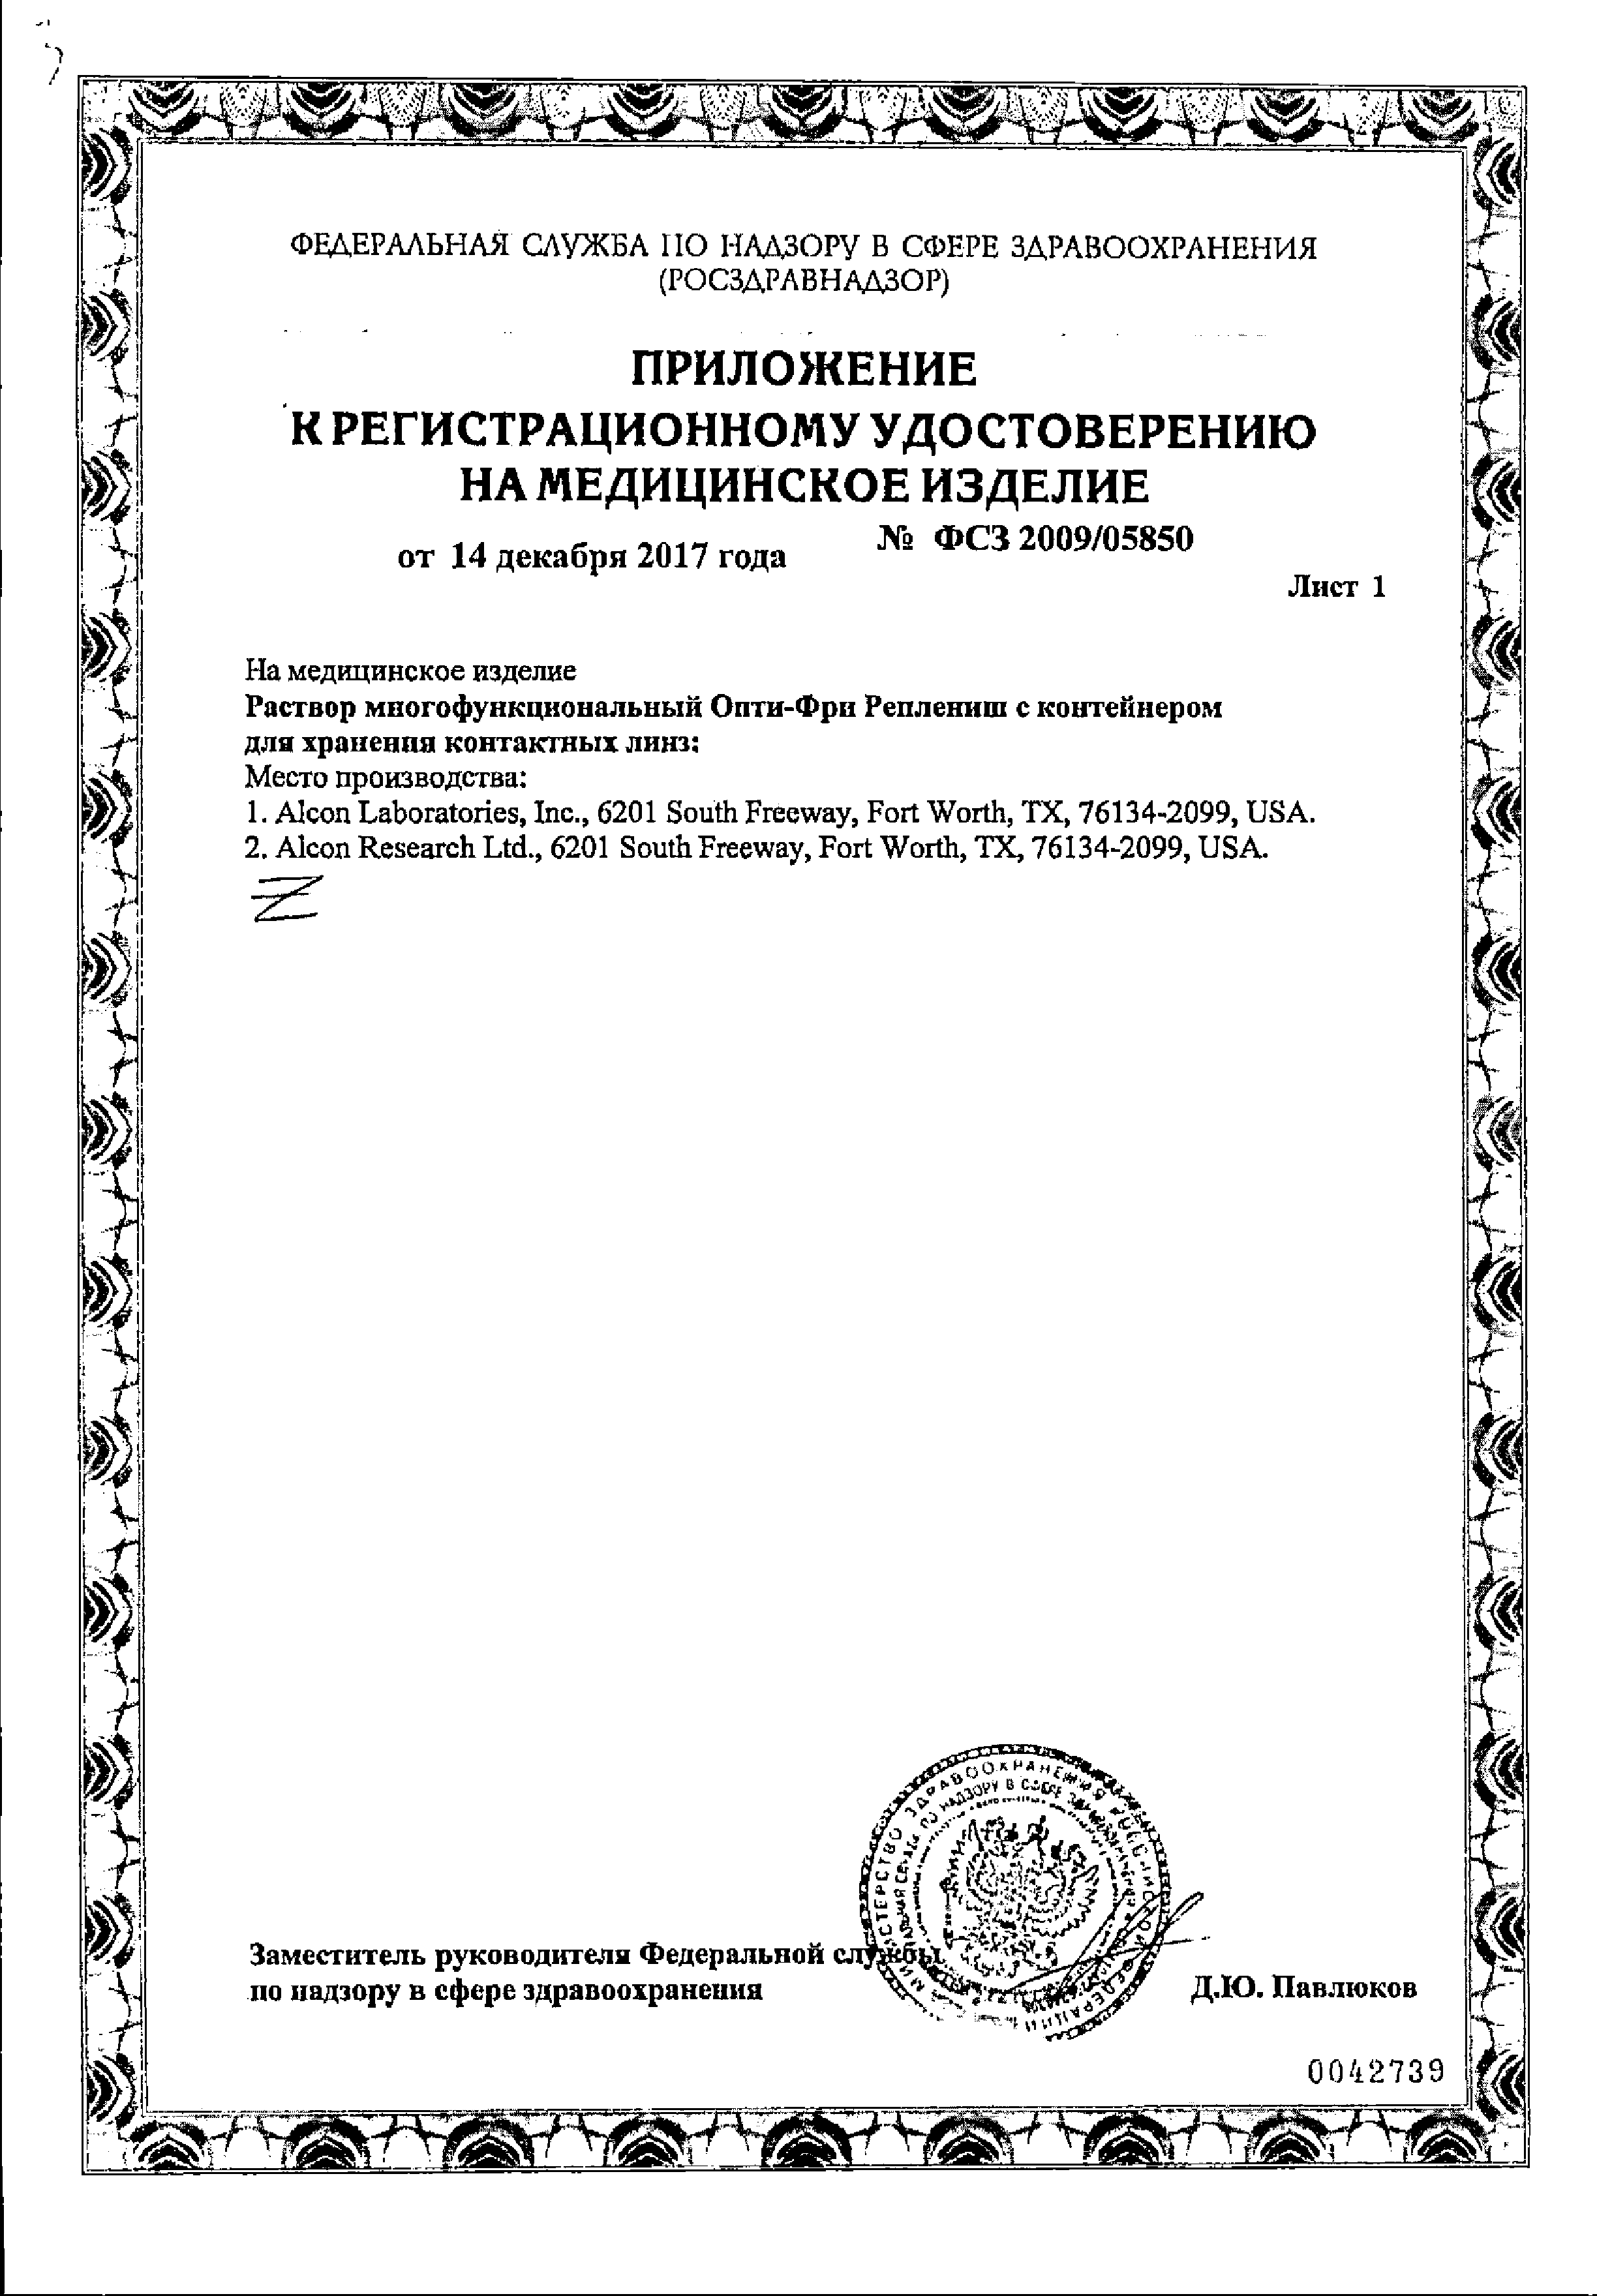 Опти-Фри Реплениш Раствор многофункциональный сертификат